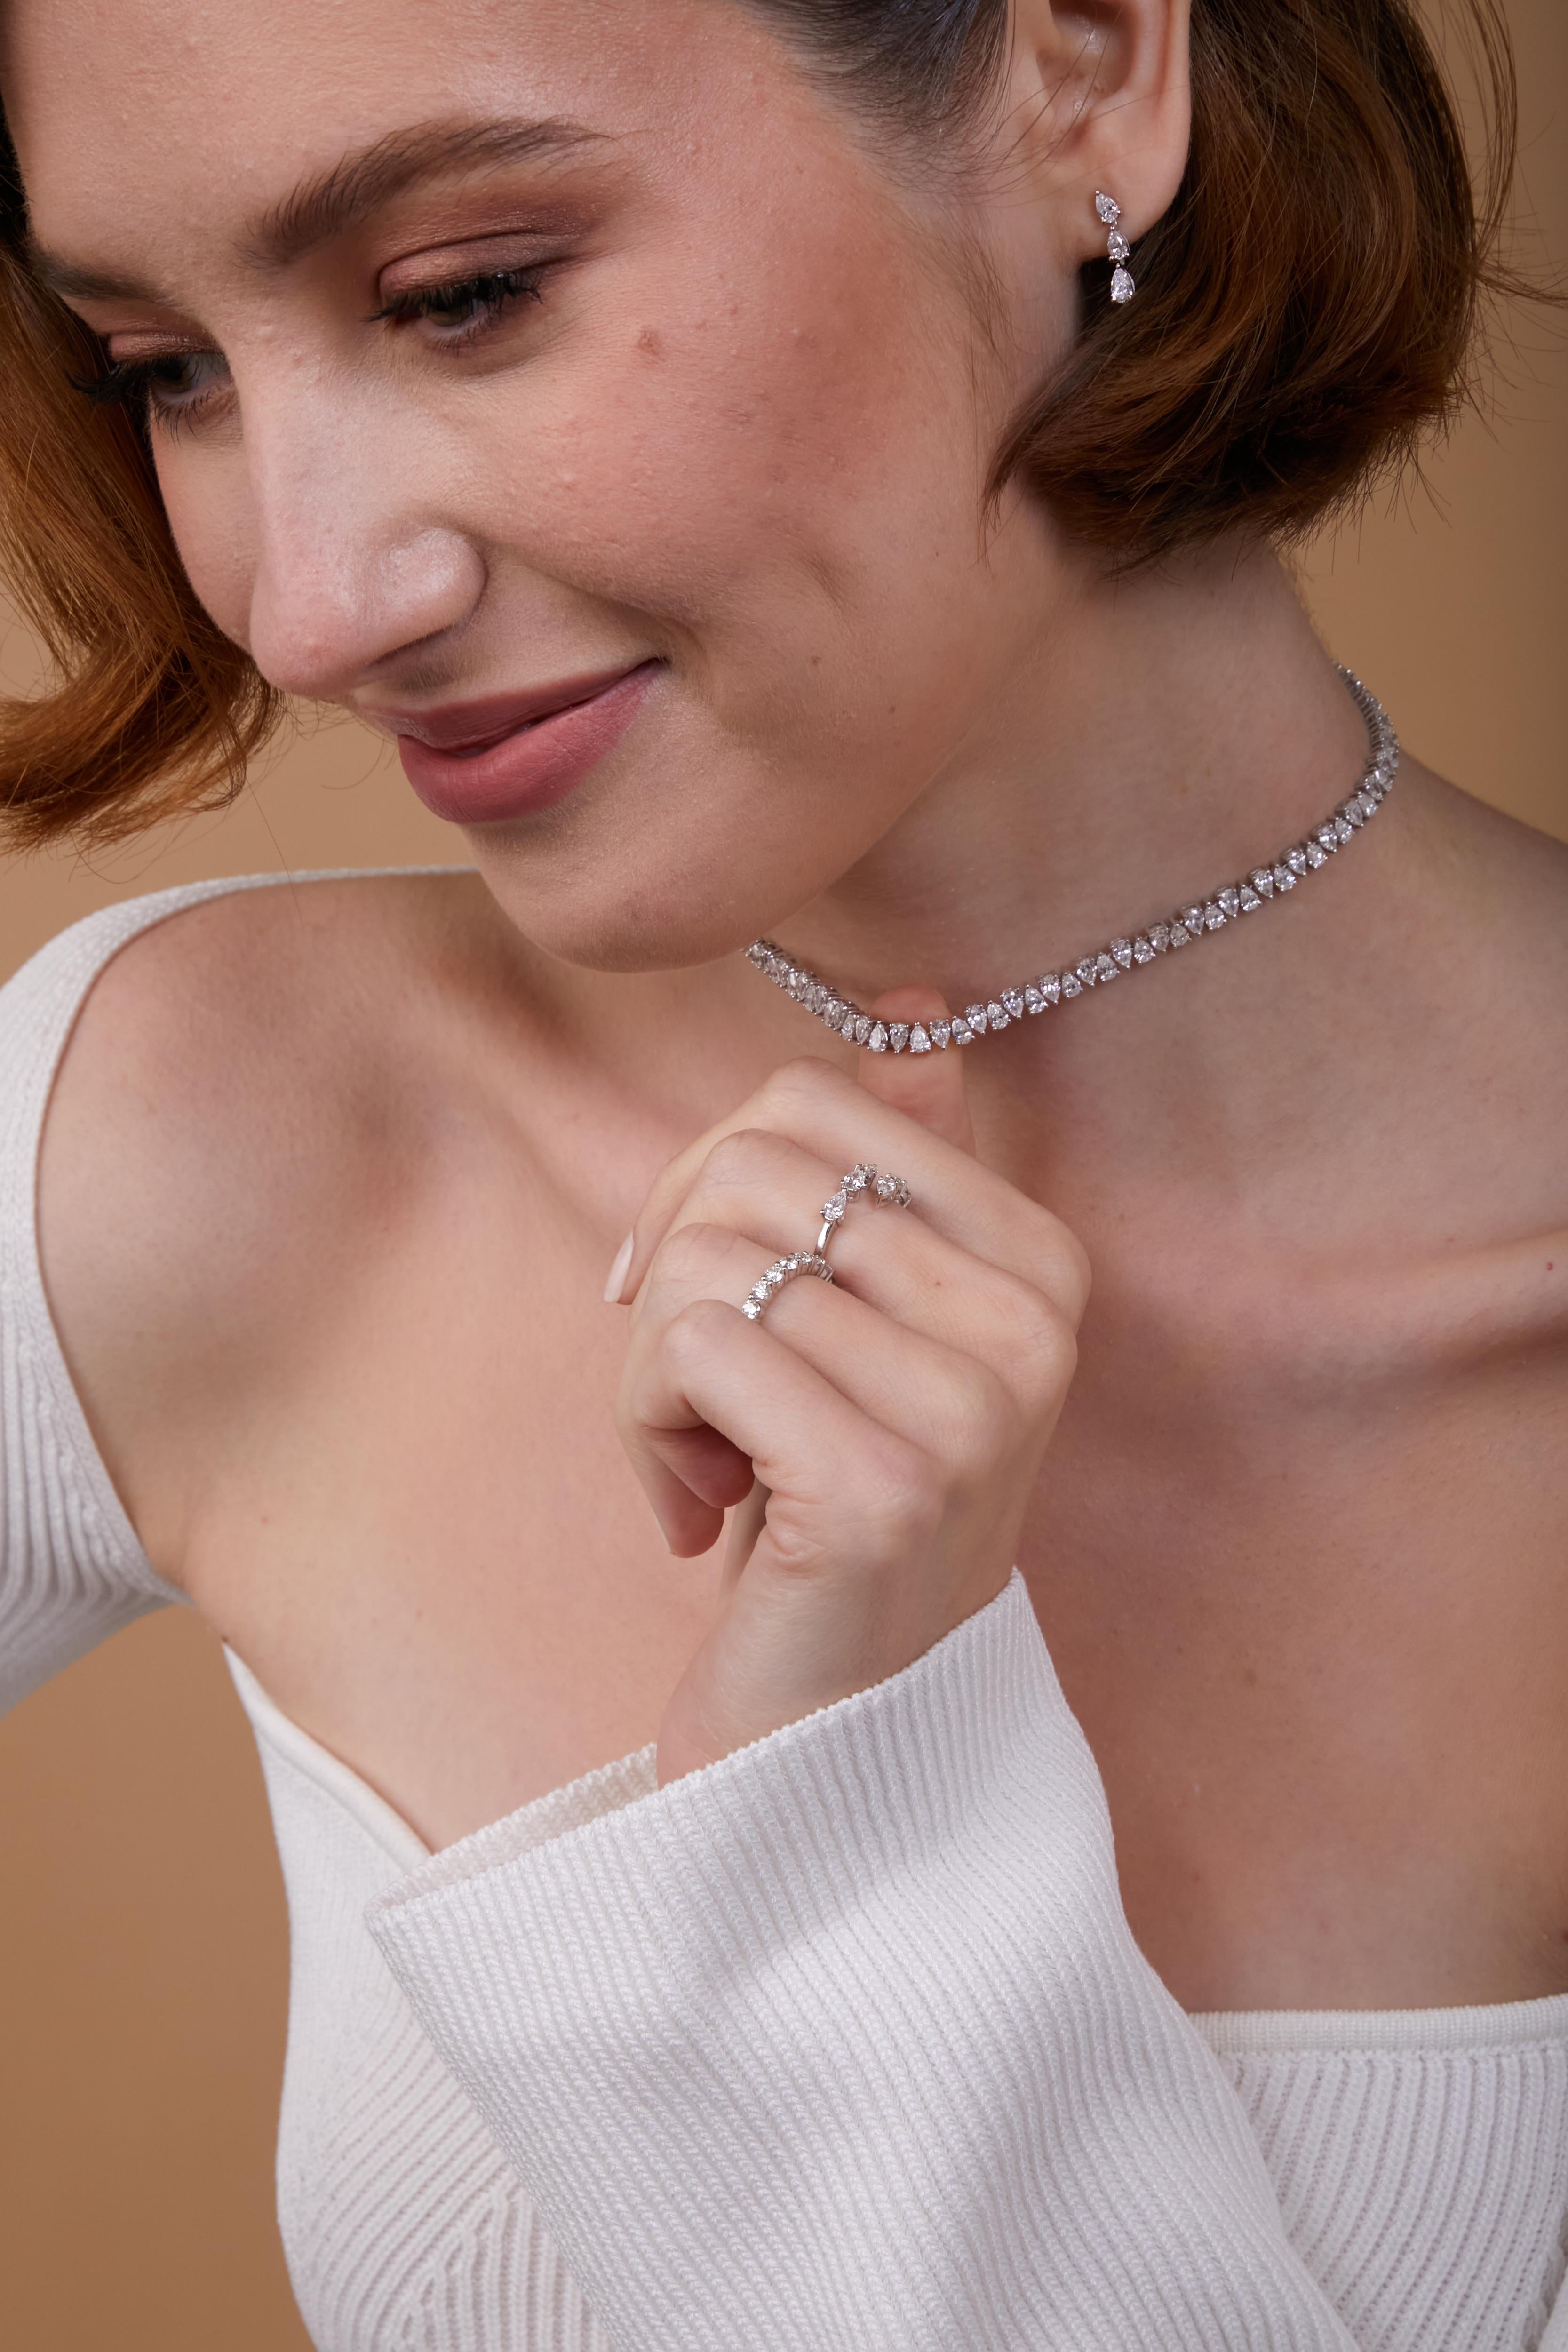 Mit ihren zierlichen, mehrförmigen Diamanten präsentiert diese Kollektion elegante Stücke, die äußerst vielseitig sind und eine zeitlose Ergänzung Ihrer Schmucksammlung darstellen.
Tanisa Jewelry verwendet nur natürliche Diamanten von hoher Qualität